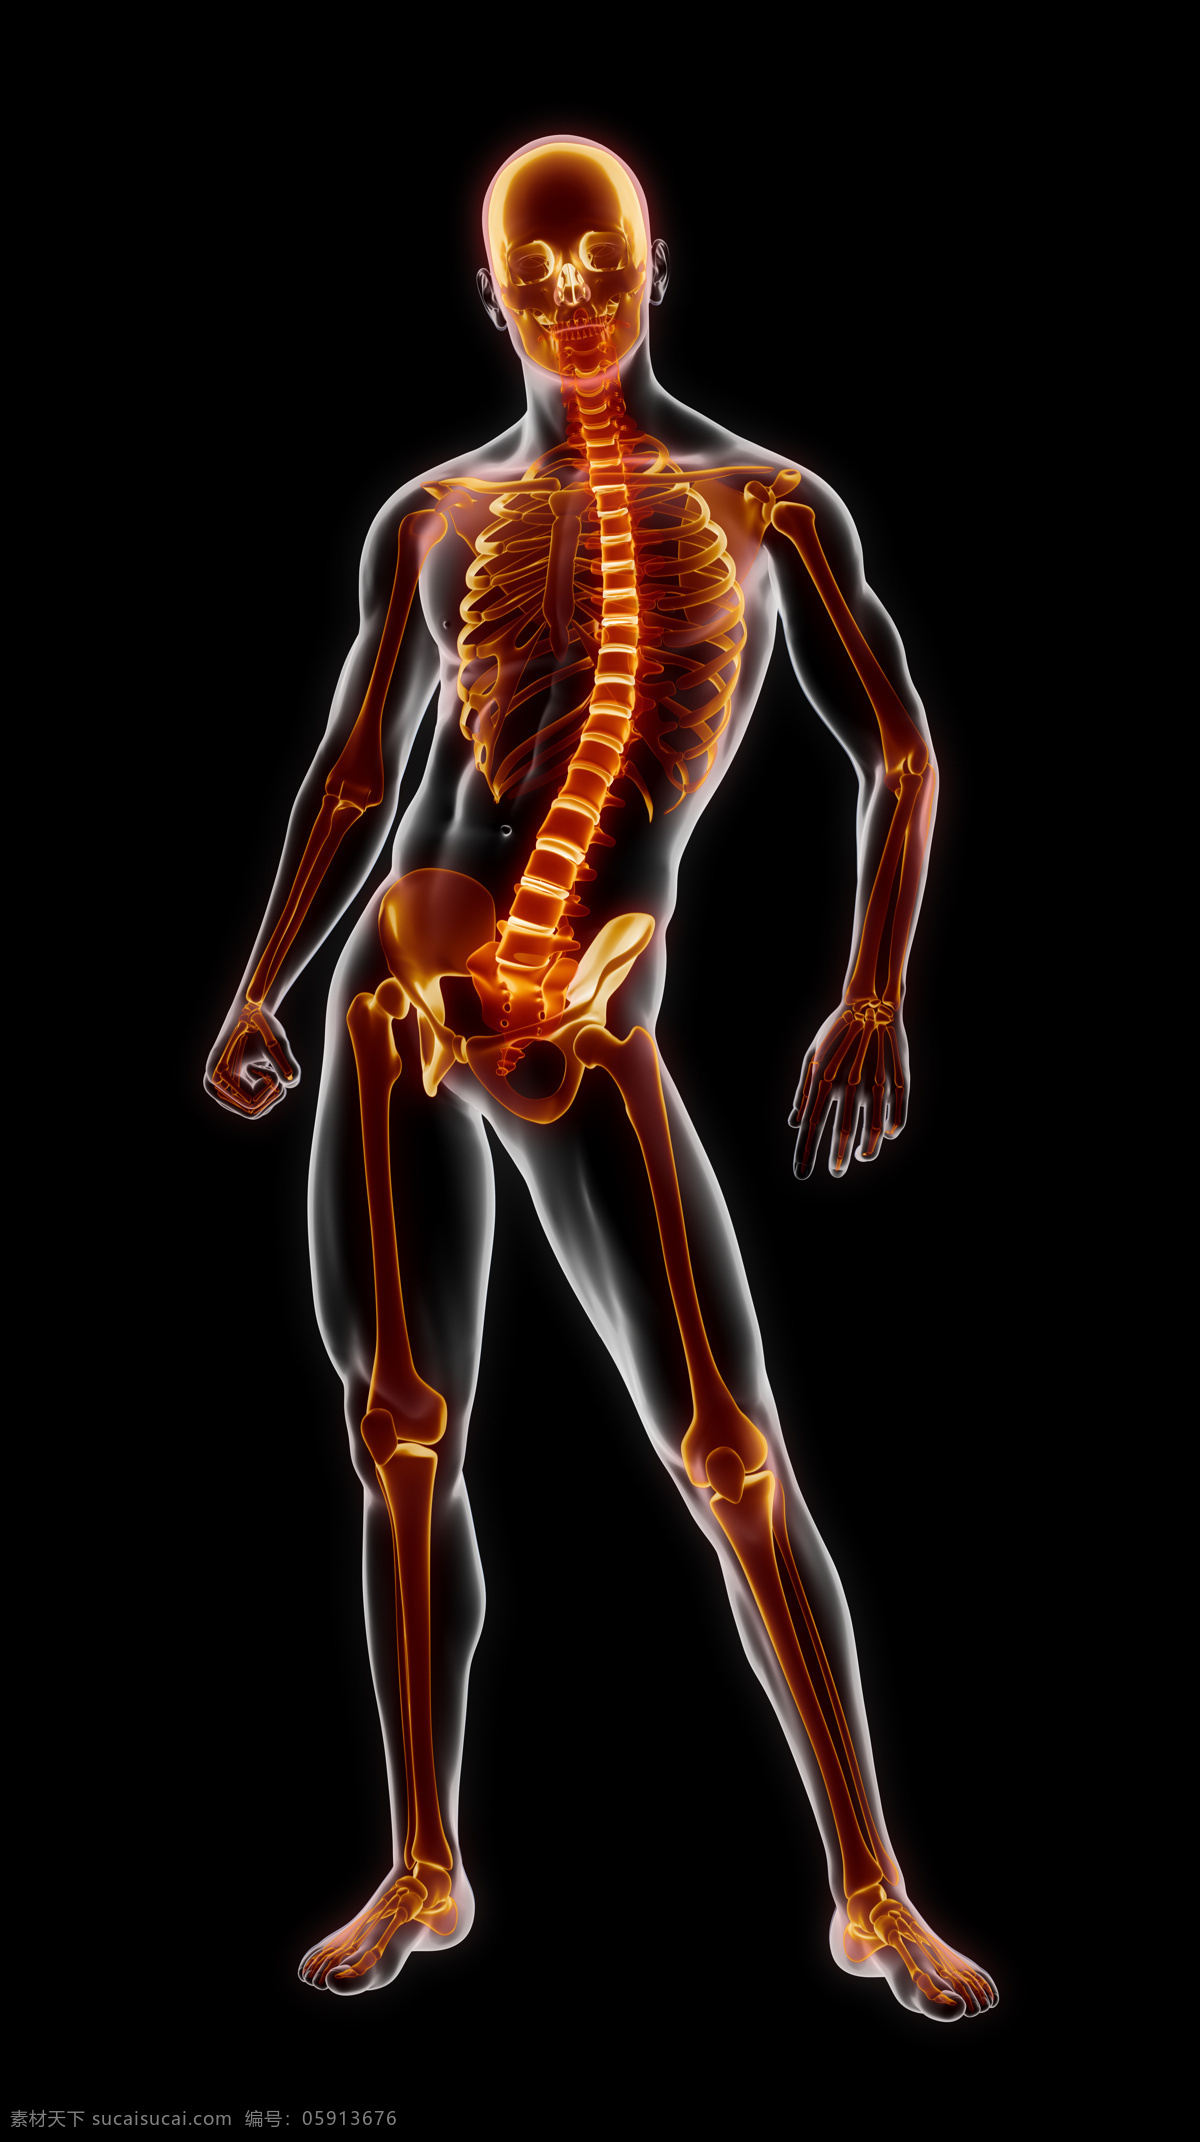 男性 人体 骨架 骨骼 男性骨架 脊椎 脊髓 男性人体器官 医疗科学 医学 人体器官图 人物图片